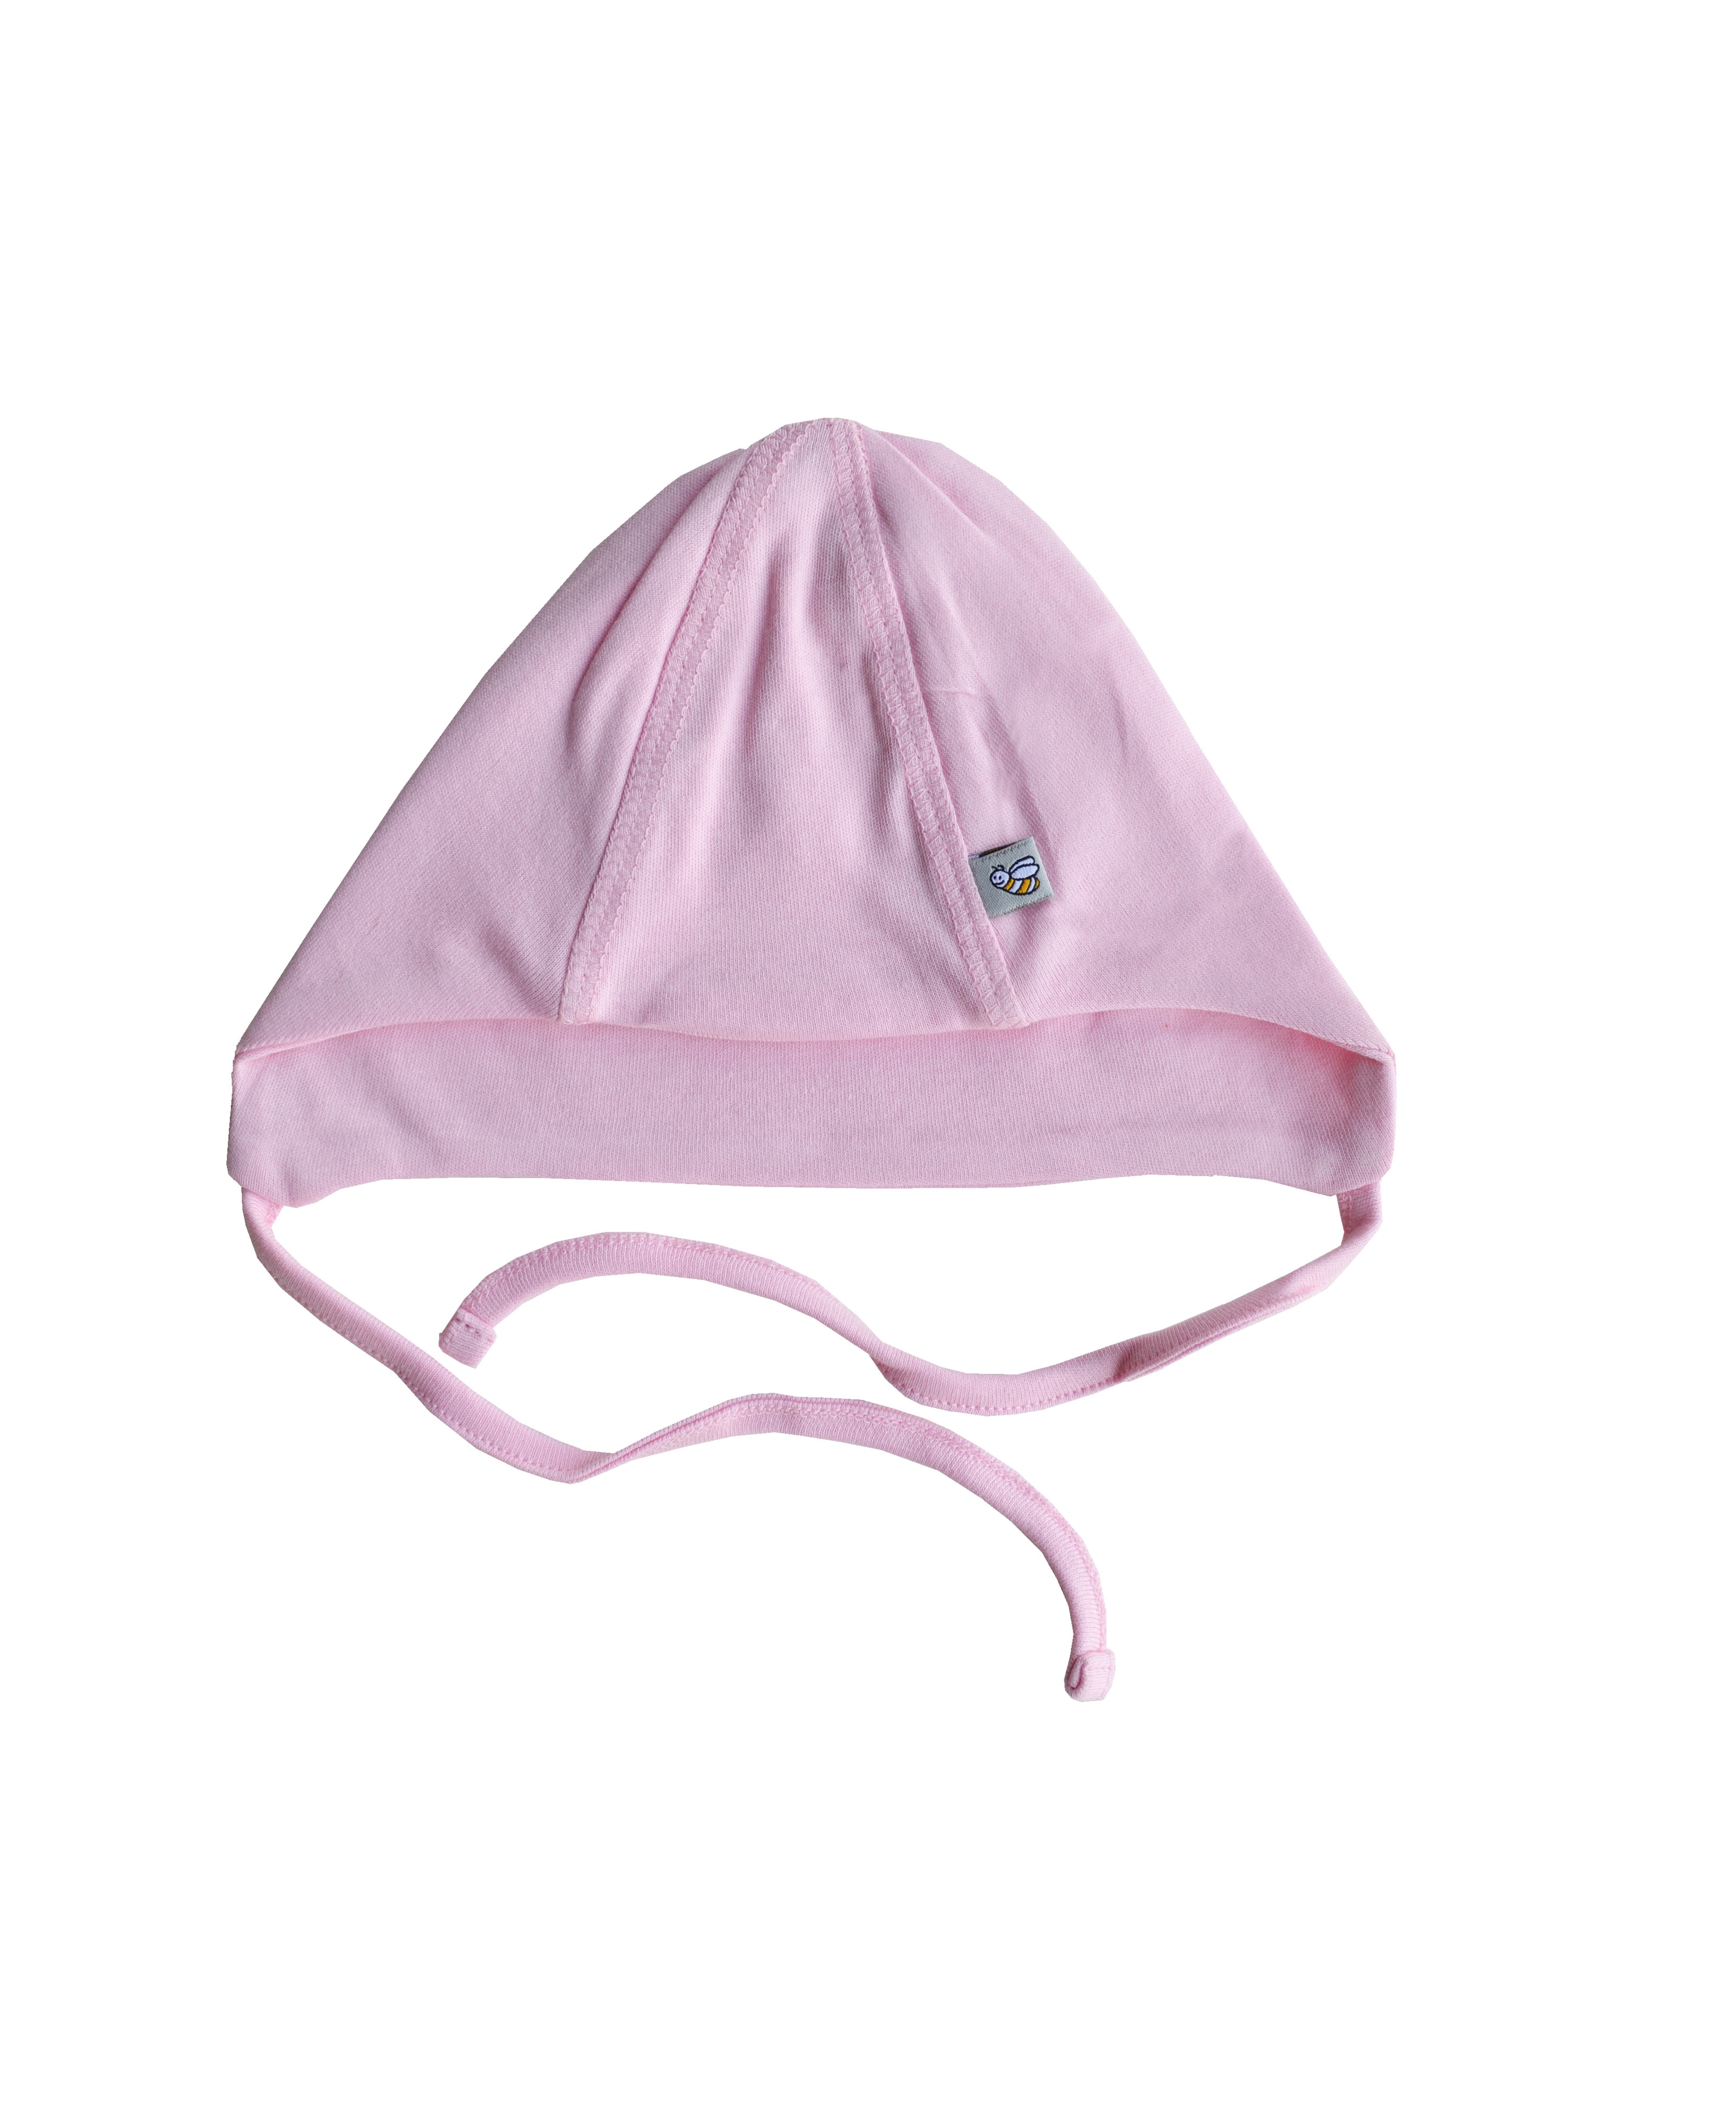 Babeez | Pink Bonnet (100% Cotton Interlock Biowash) undefined